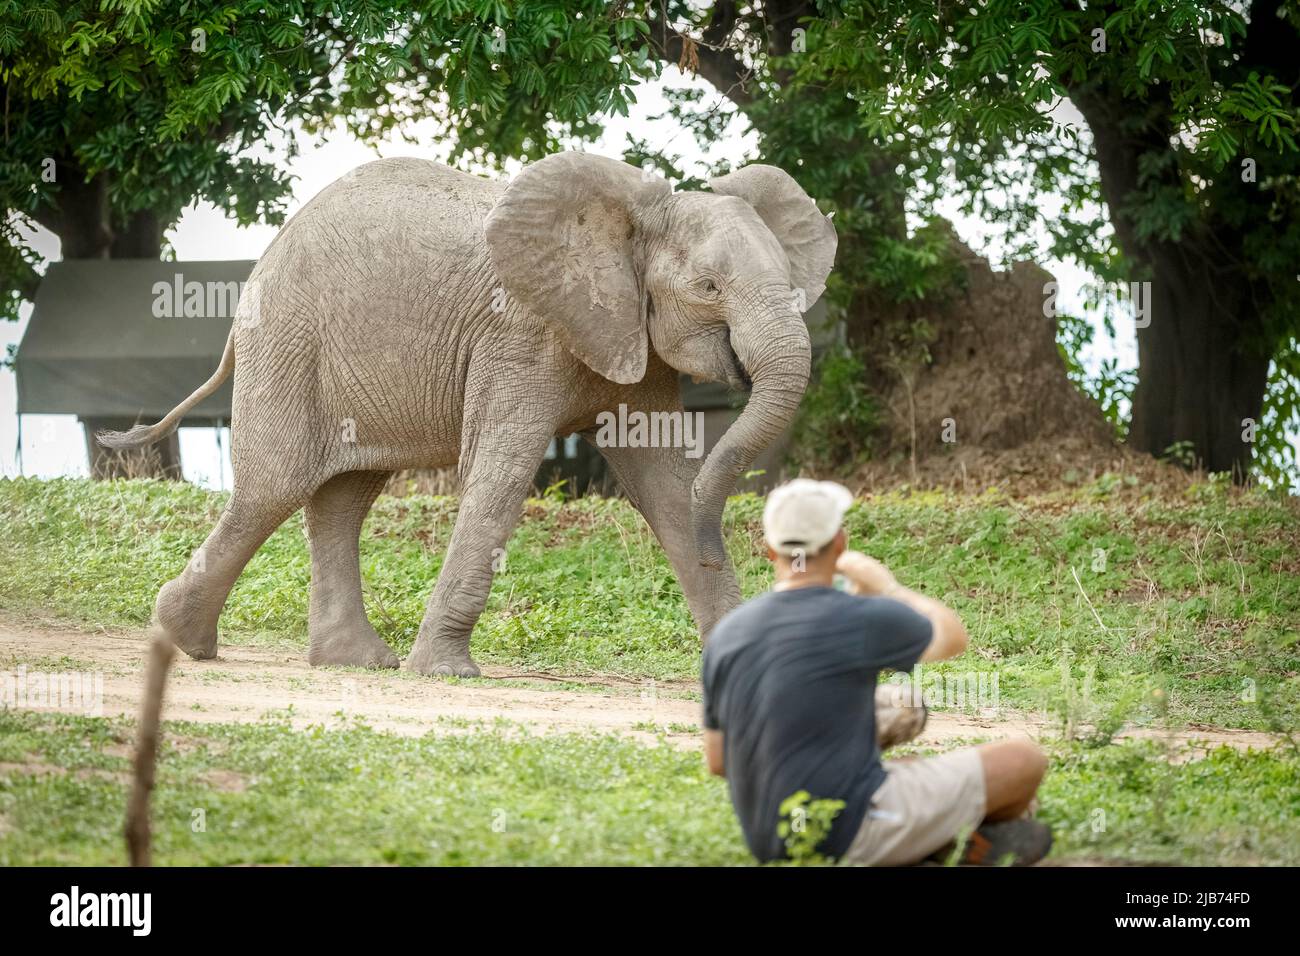 Young elephant running/charging near zambezi river zimbabwe Stock Photo